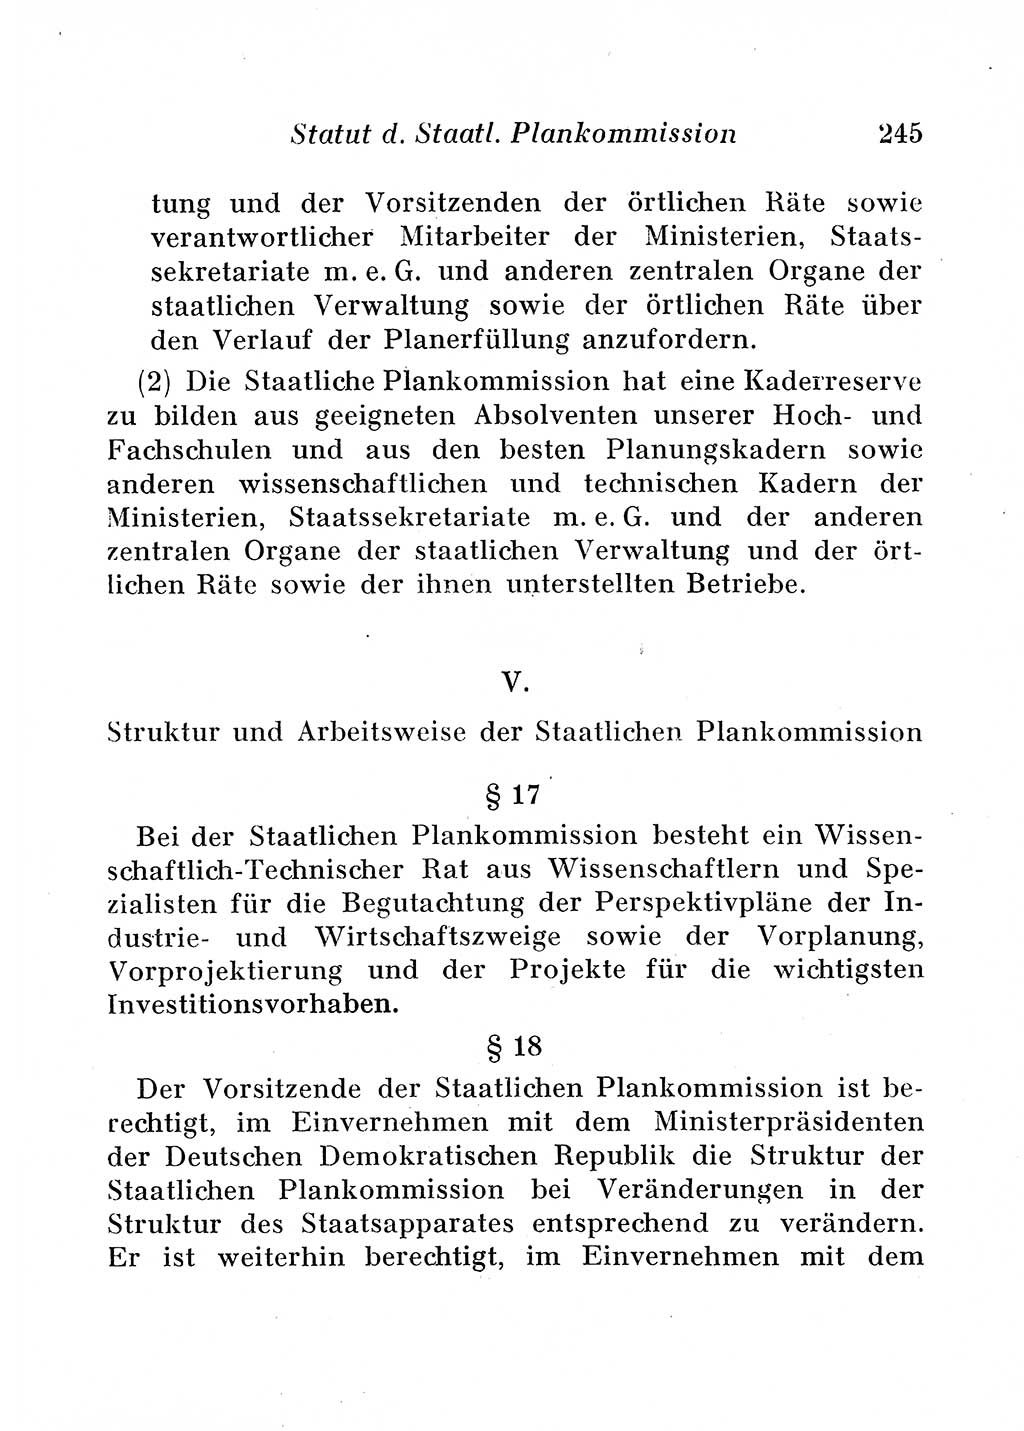 Staats- und verwaltungsrechtliche Gesetze der Deutschen Demokratischen Republik (DDR) 1958, Seite 245 (StVerwR Ges. DDR 1958, S. 245)